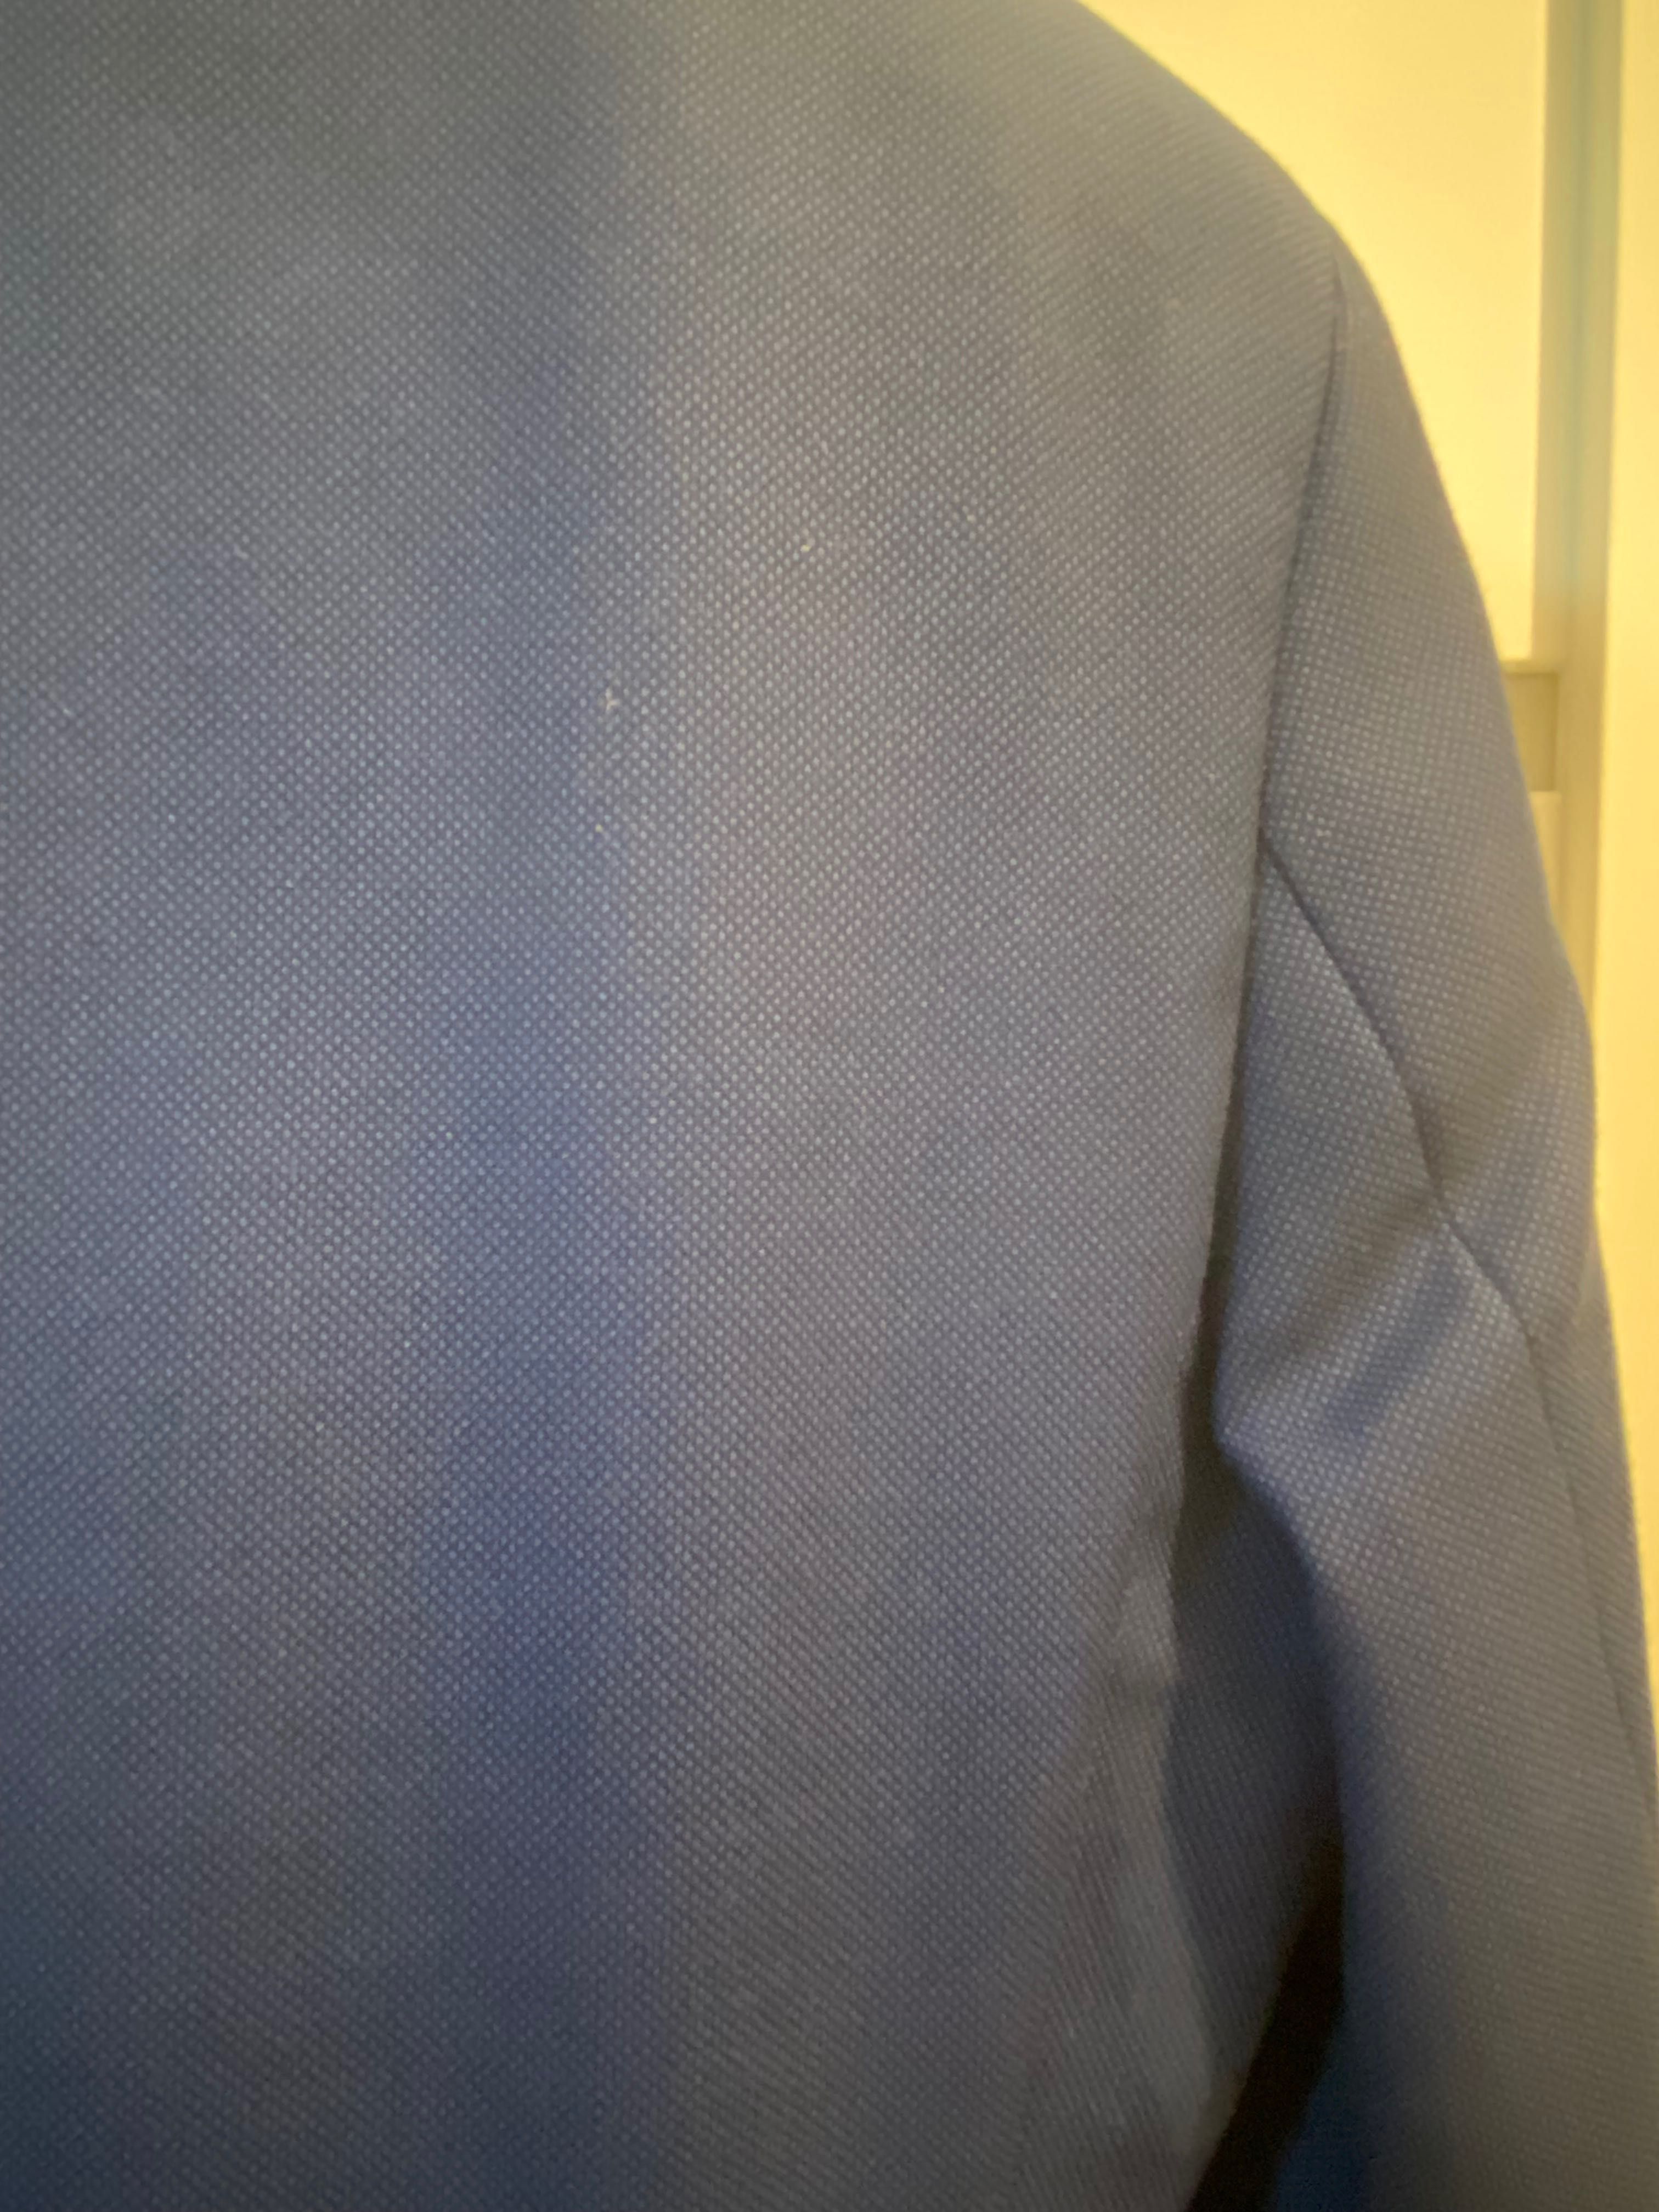 Granatowy, wełniany garnitur męski firmy vestis